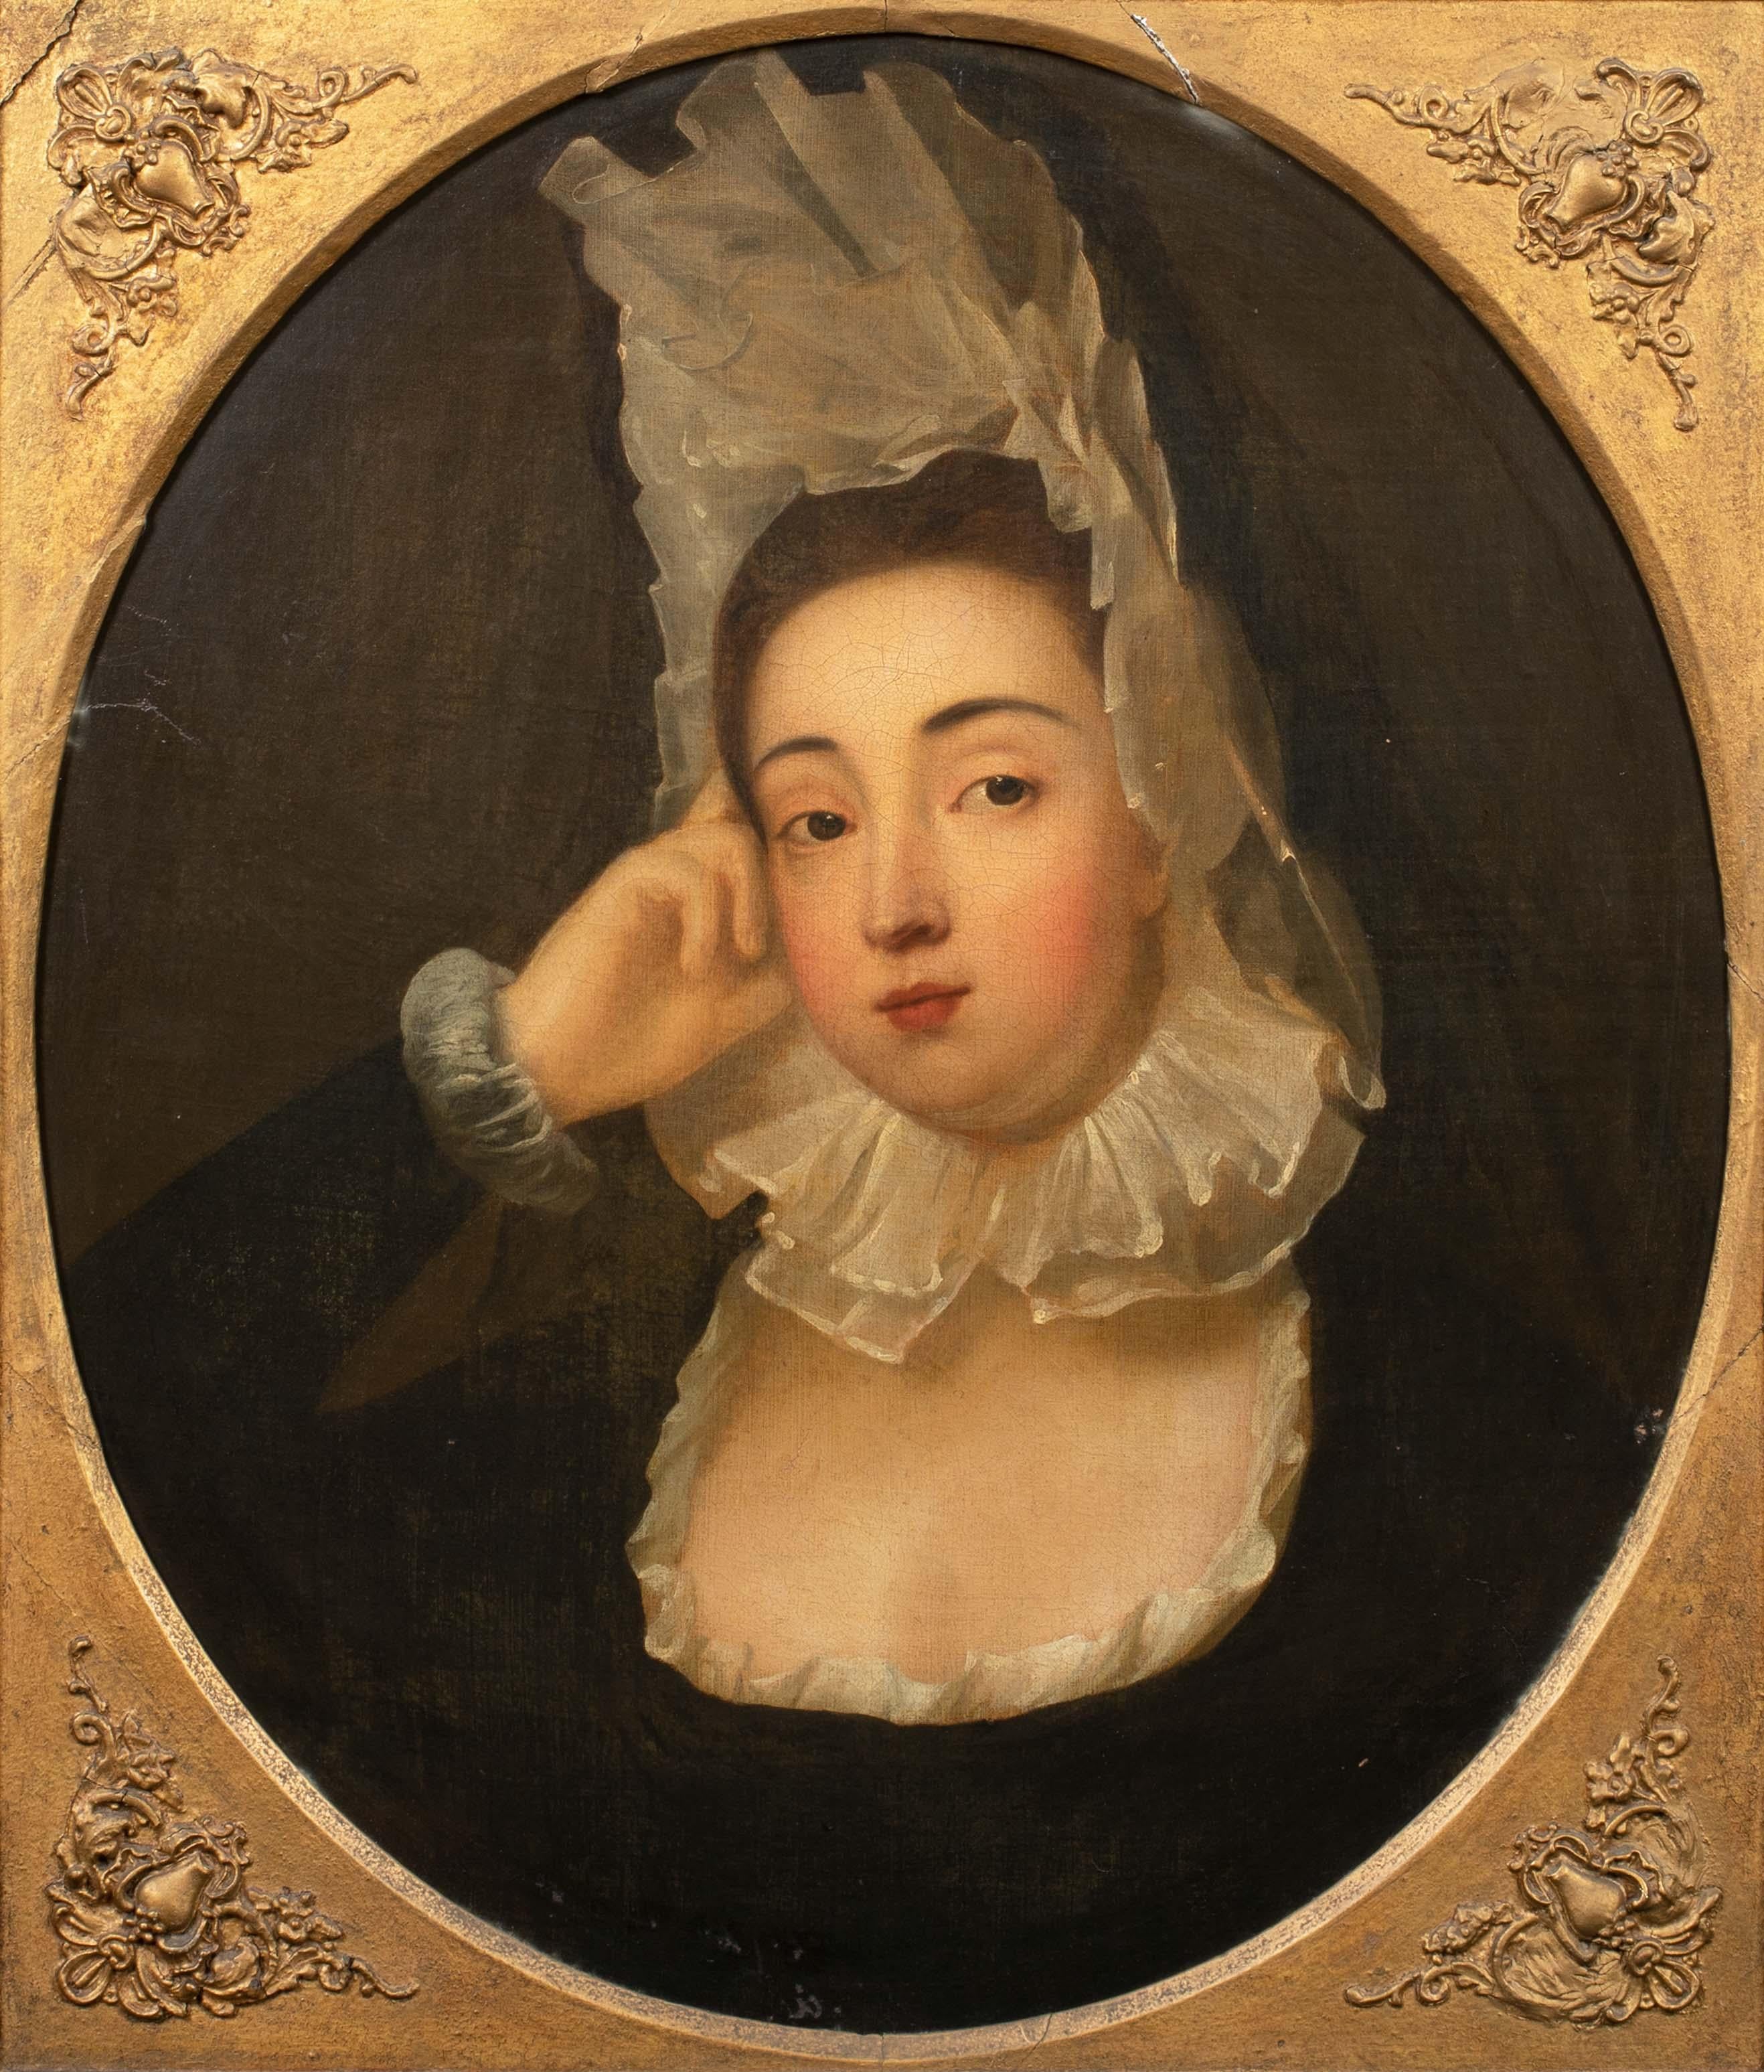 18th century bonnet